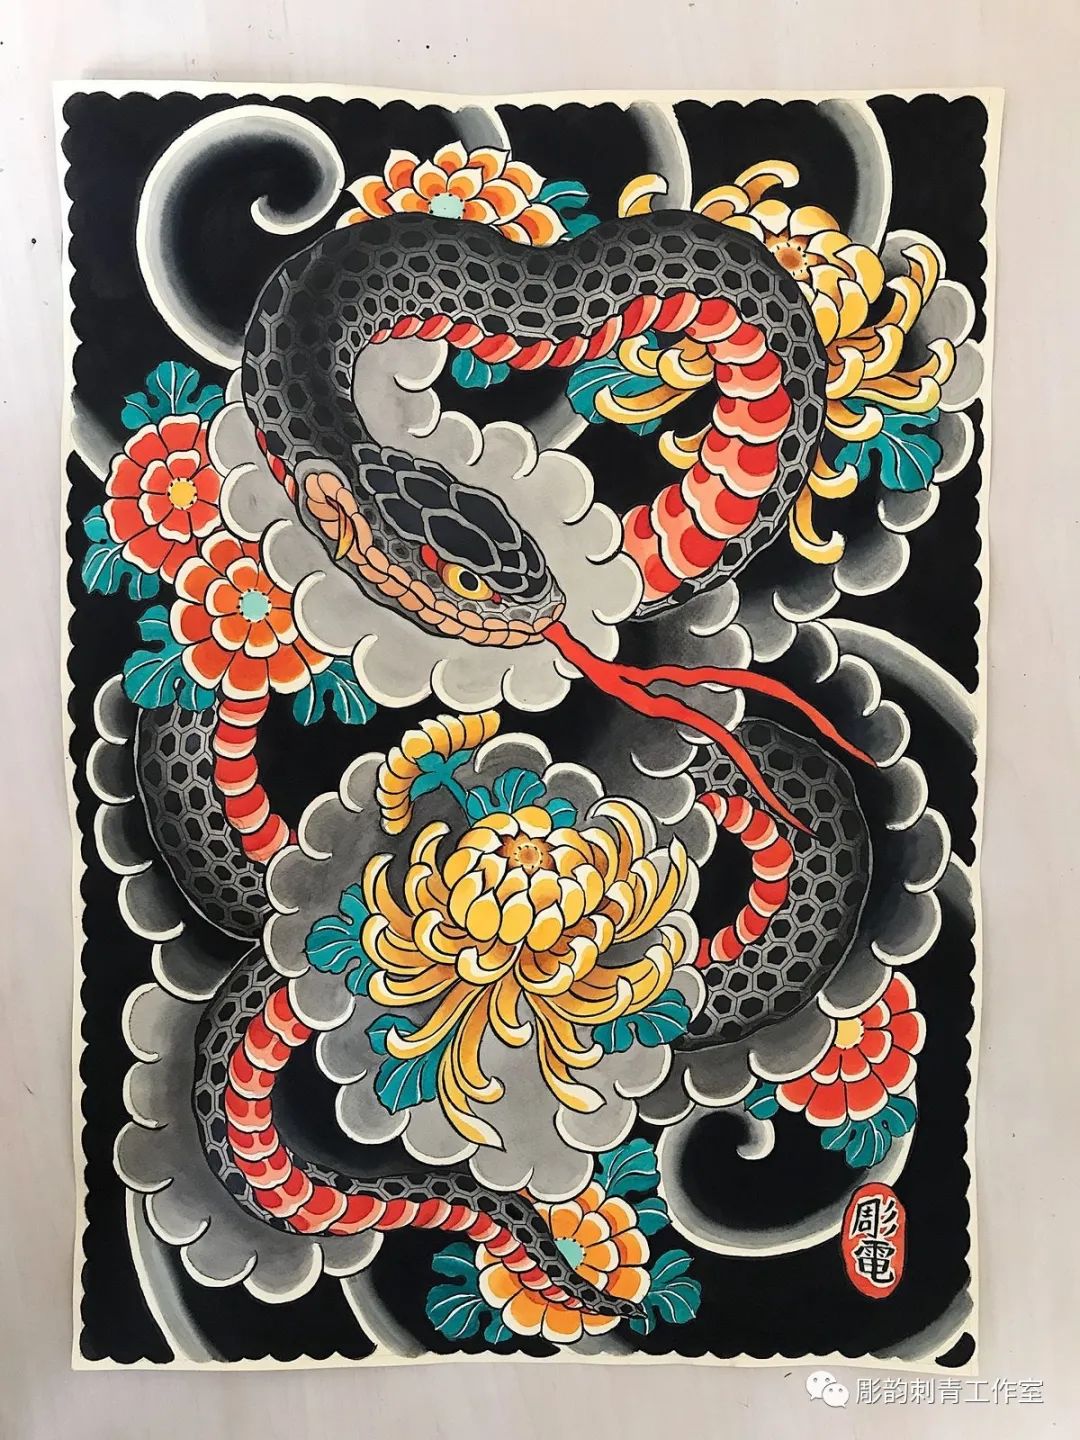 《老传统》——蛇/纹身刺青手稿